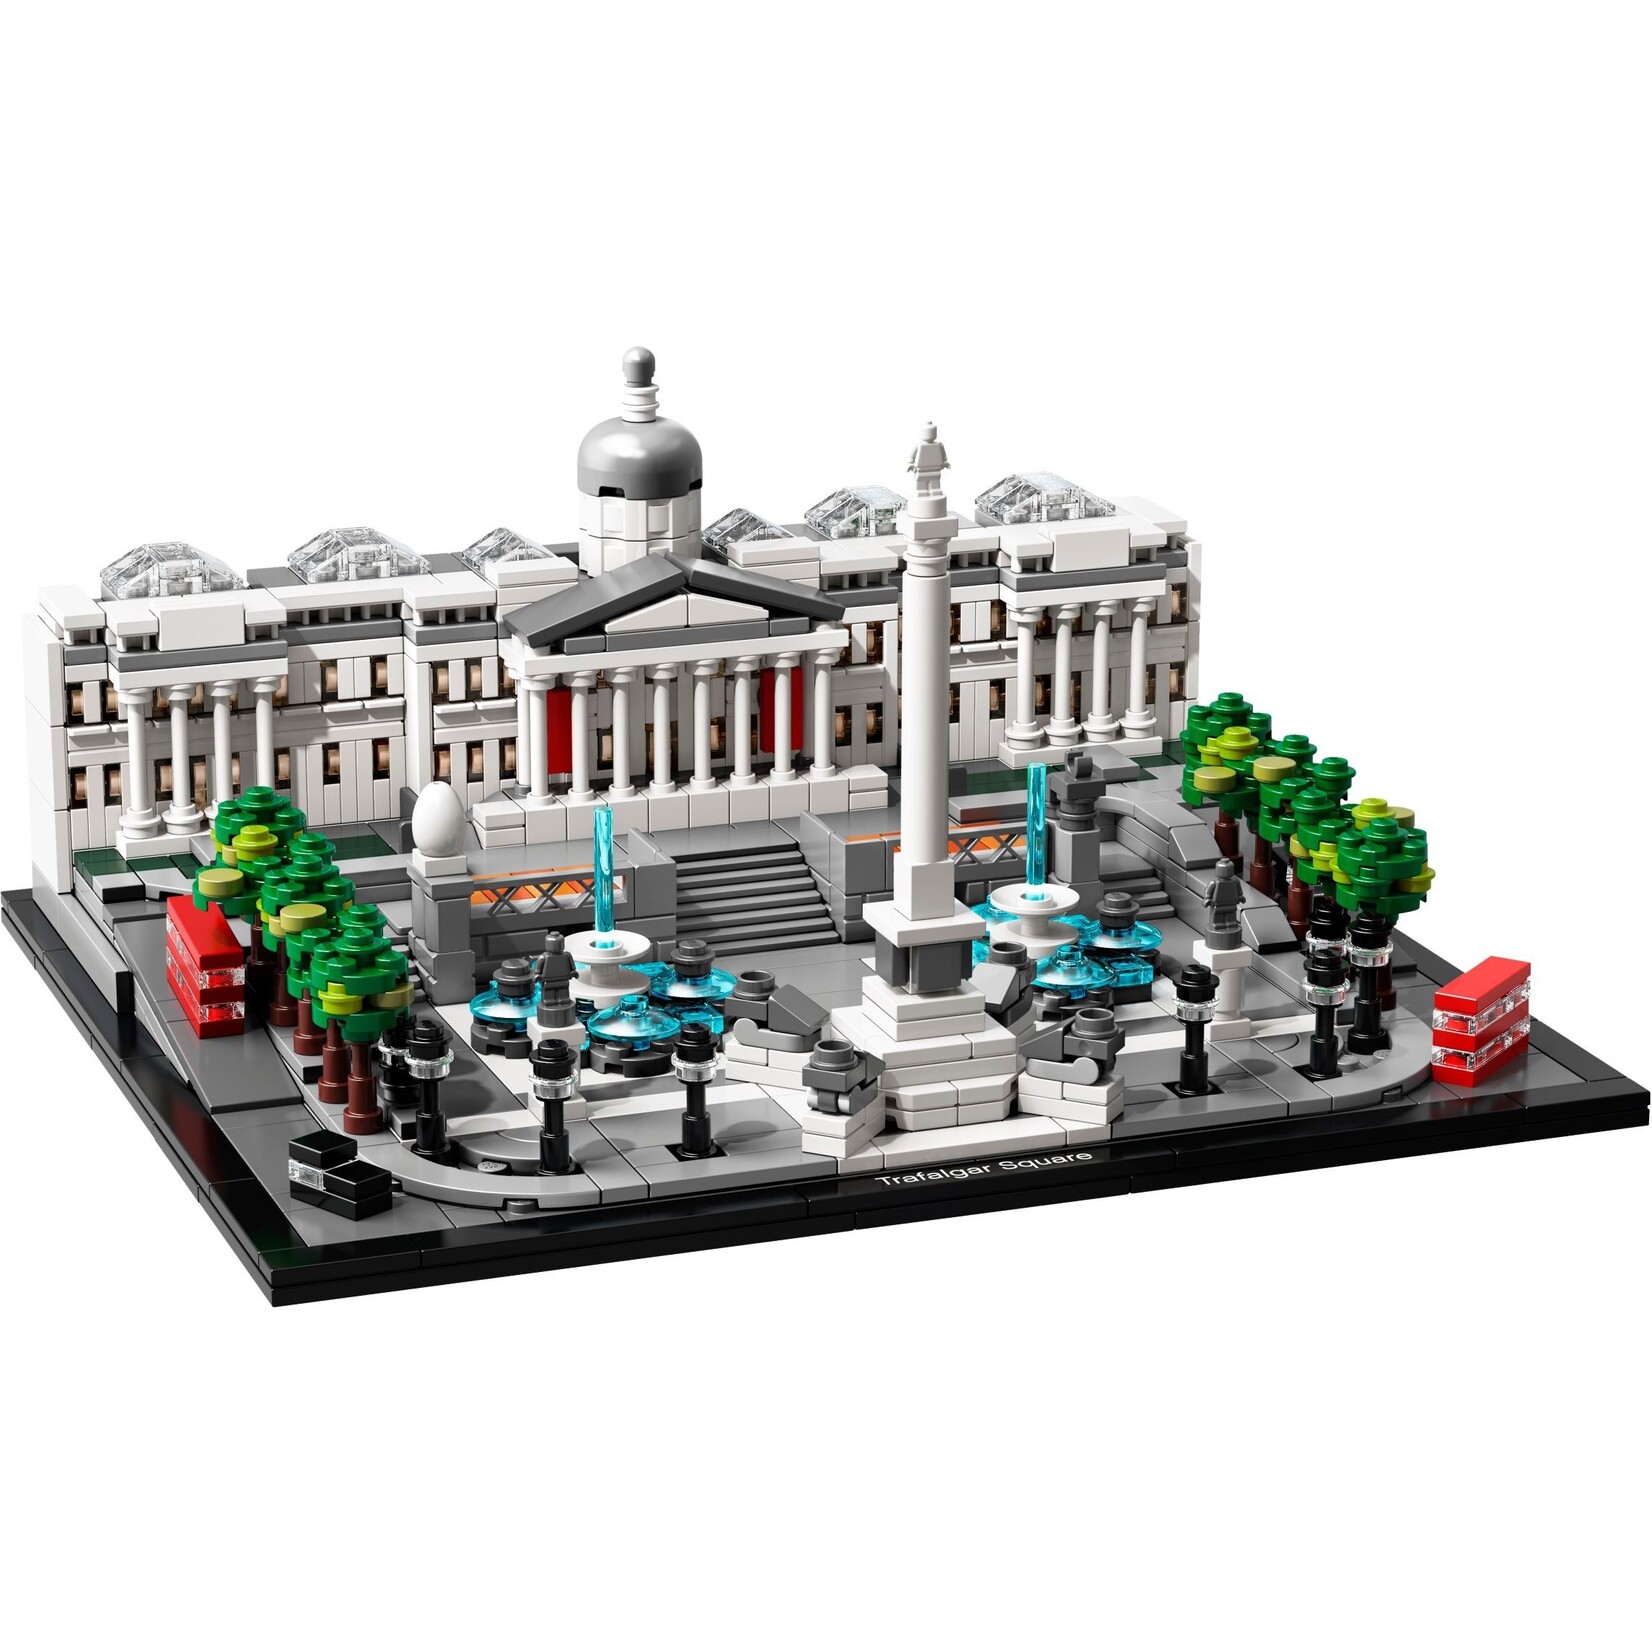 LEGO Trafalgar Square - 21045